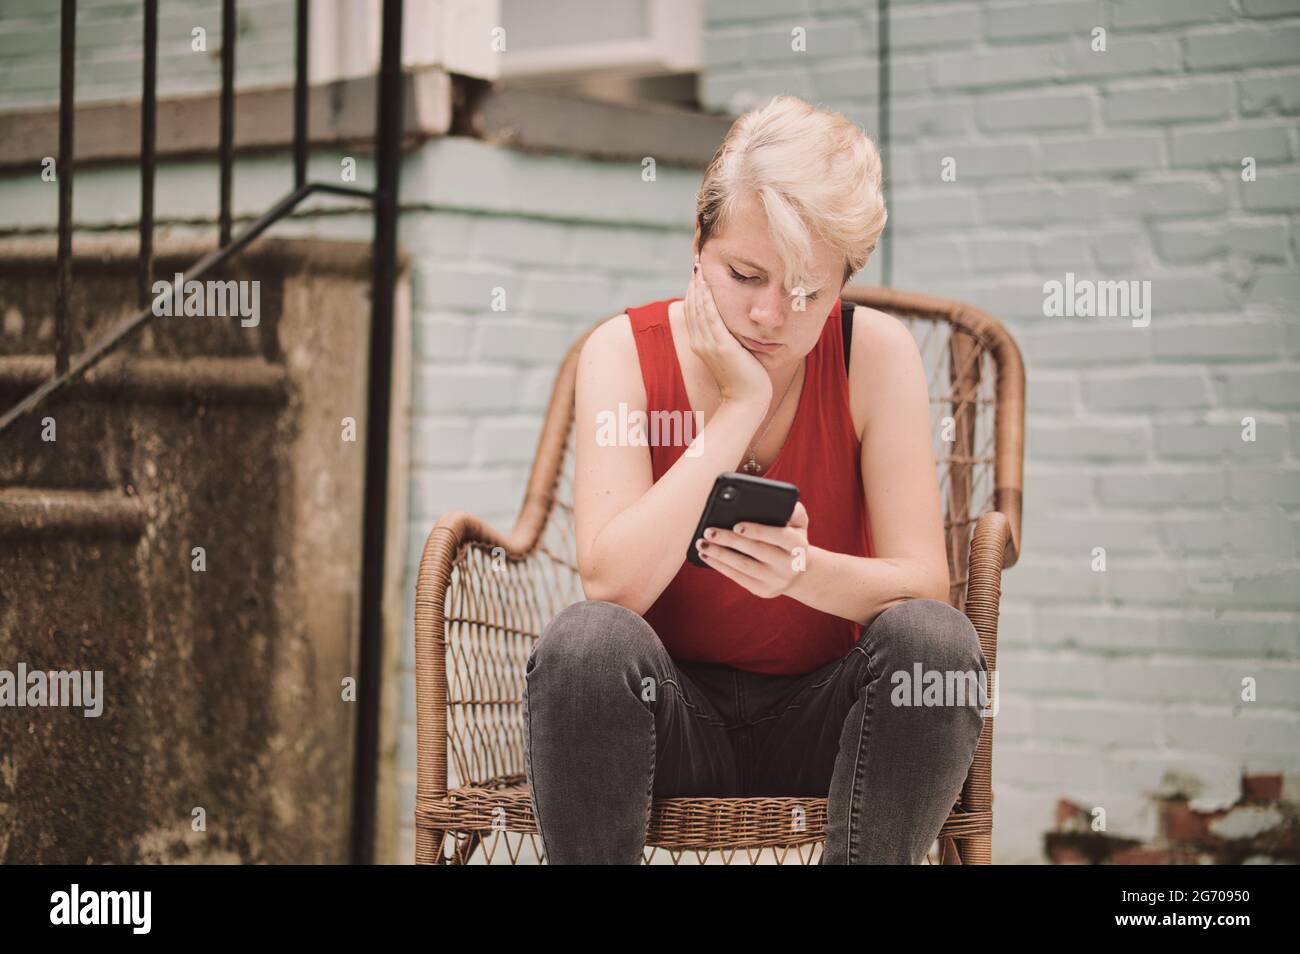 Junge Person, die auf dem Stuhl sitzend auf das Handy schaut Stockfoto